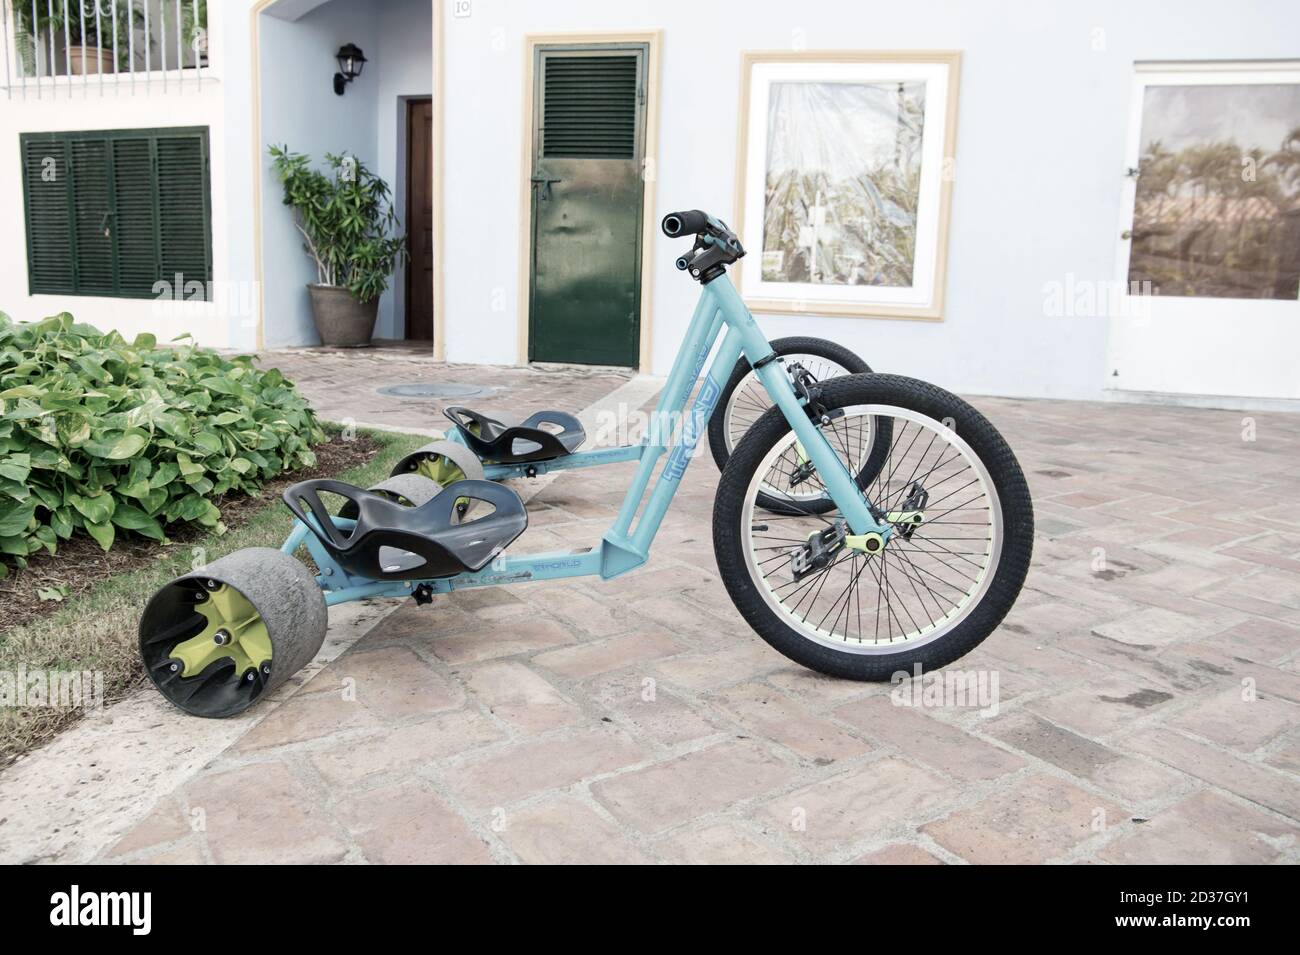 La romana, República Dominicana - 16 de febrero de 2016: Bicicleta  deportiva fresca o triciclo color azul con casco de hierro y plástico y  gran neumático de goma para la arena tiene